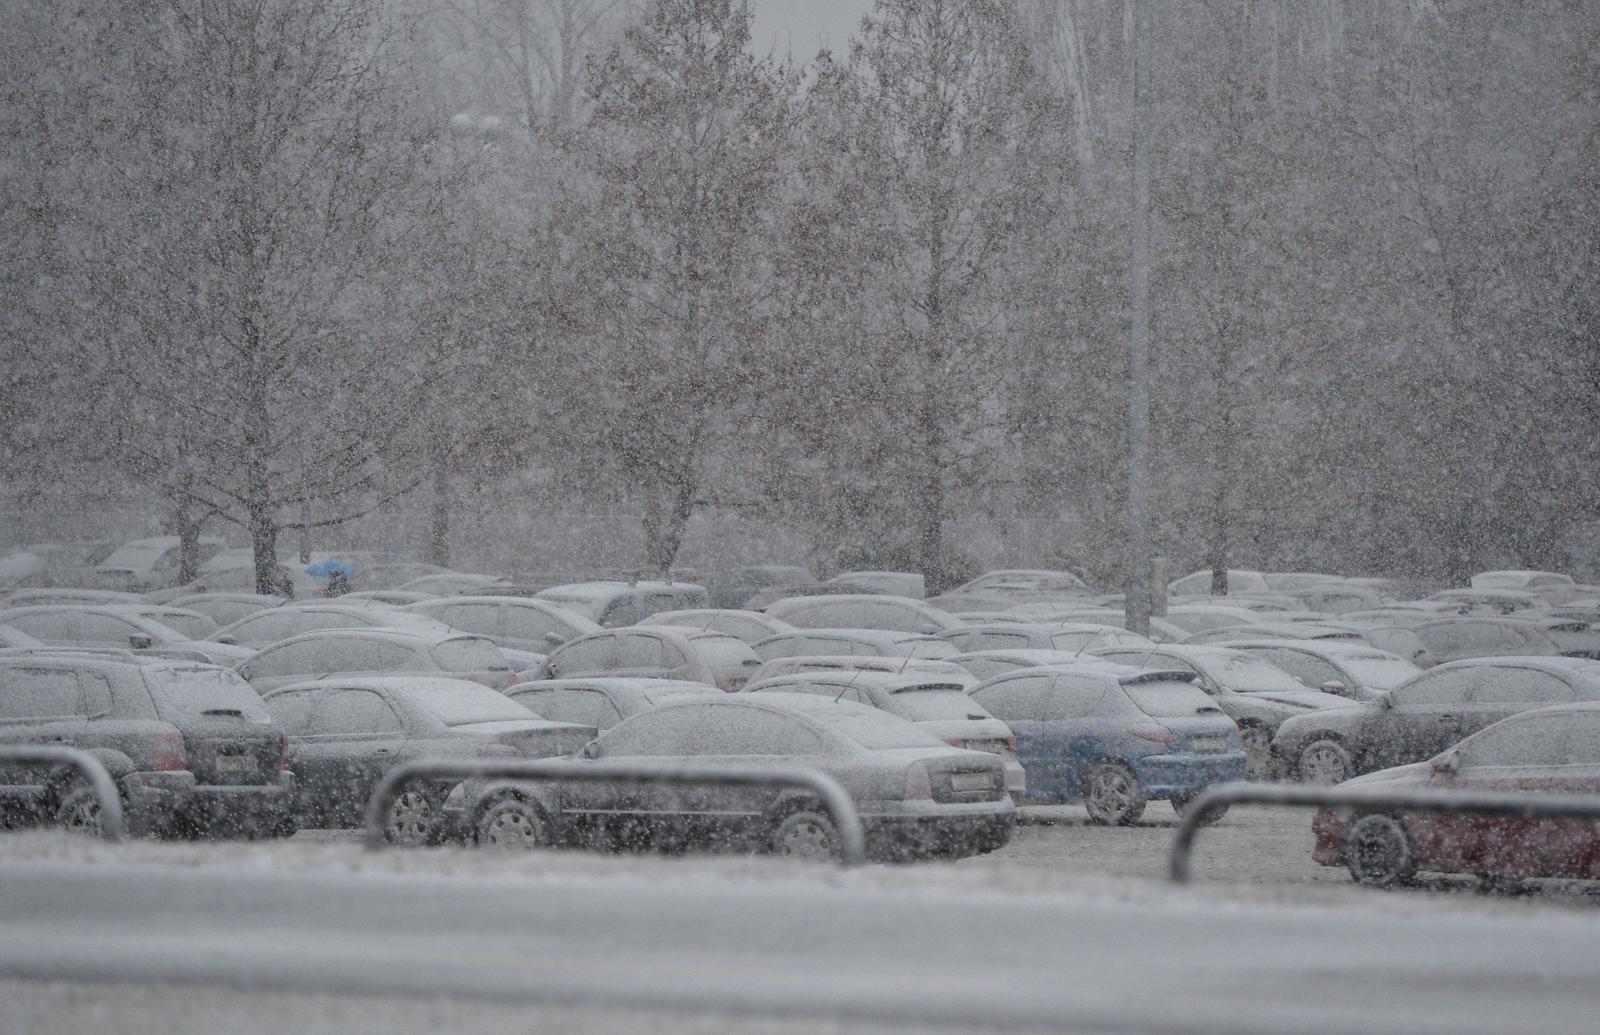 13.01.2017., Zagreb - U poslijepodnevnim satima na podrucju grada poceo je padati snijeg. Nekoliko sati prije bilo je suncano, nakon cega je uslijedila kisa pracena jakim vjetrom, a temperatura se spustila za nekoliko stupnjeva. 
Photo: Marko Lukunic/PIXSELL